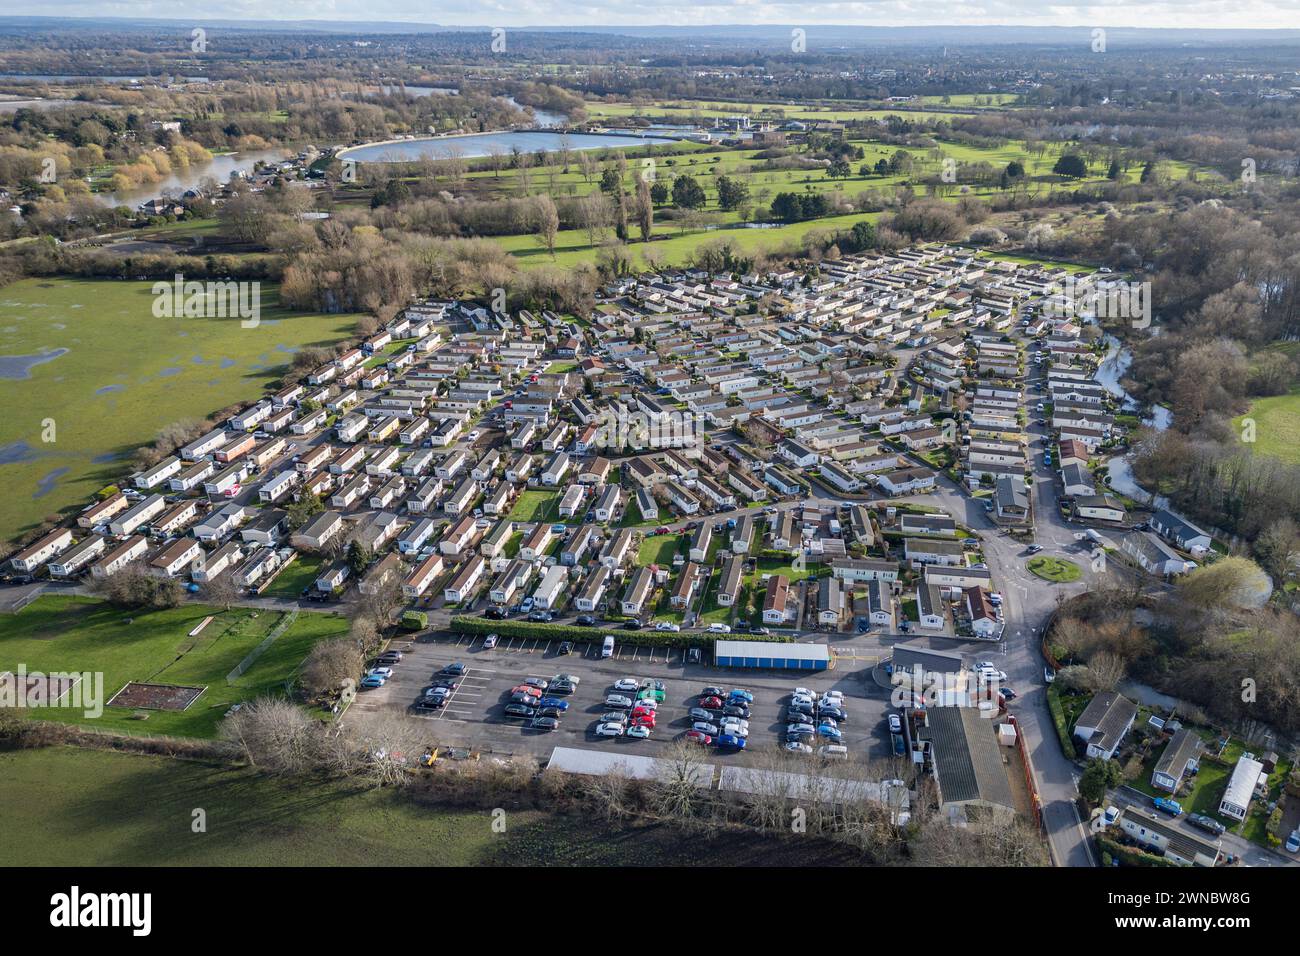 Vue aérienne de Penton Park, un parc de mobil-homes, un parc de semi-retraite près de la Tamise et de Staines upon Thames, Royaume-Uni. Banque D'Images